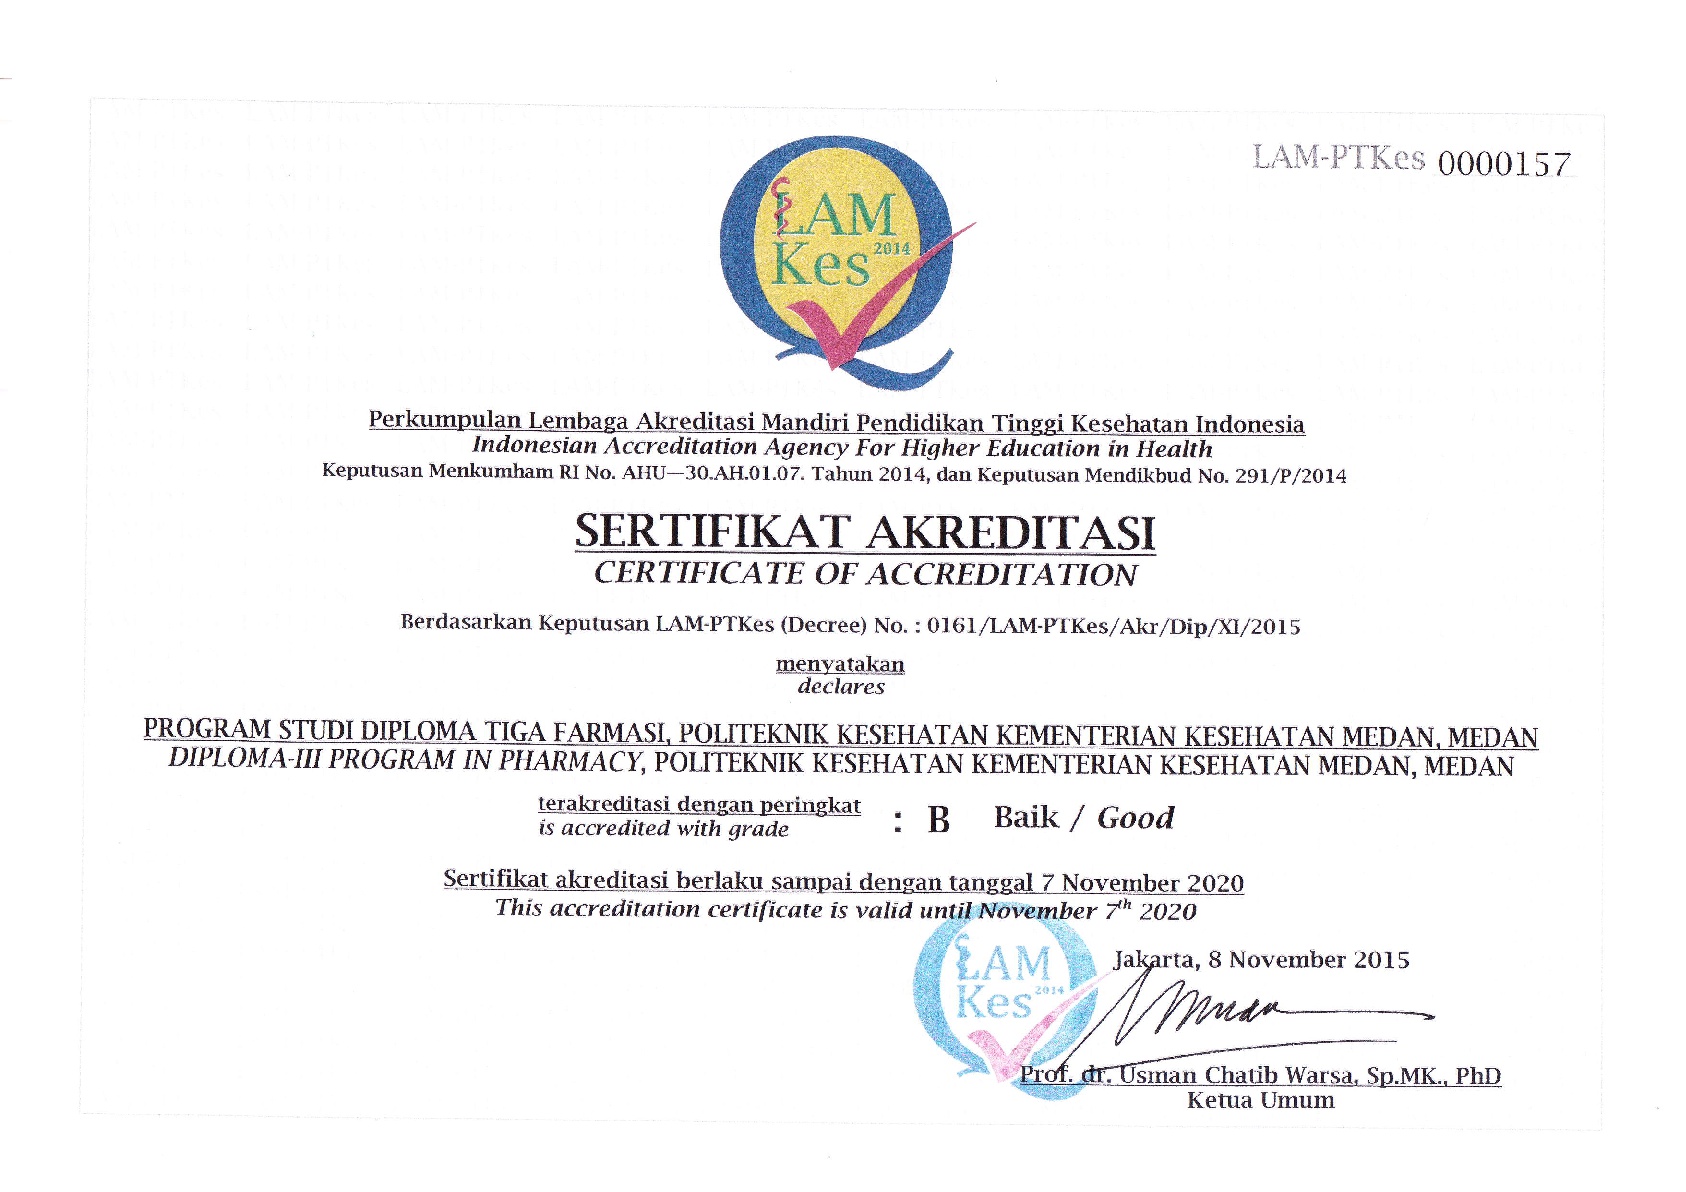 Sertifikat Akreditasi Prodi D-III Farmasi yang dikeluarkan oleh LAMPTKes